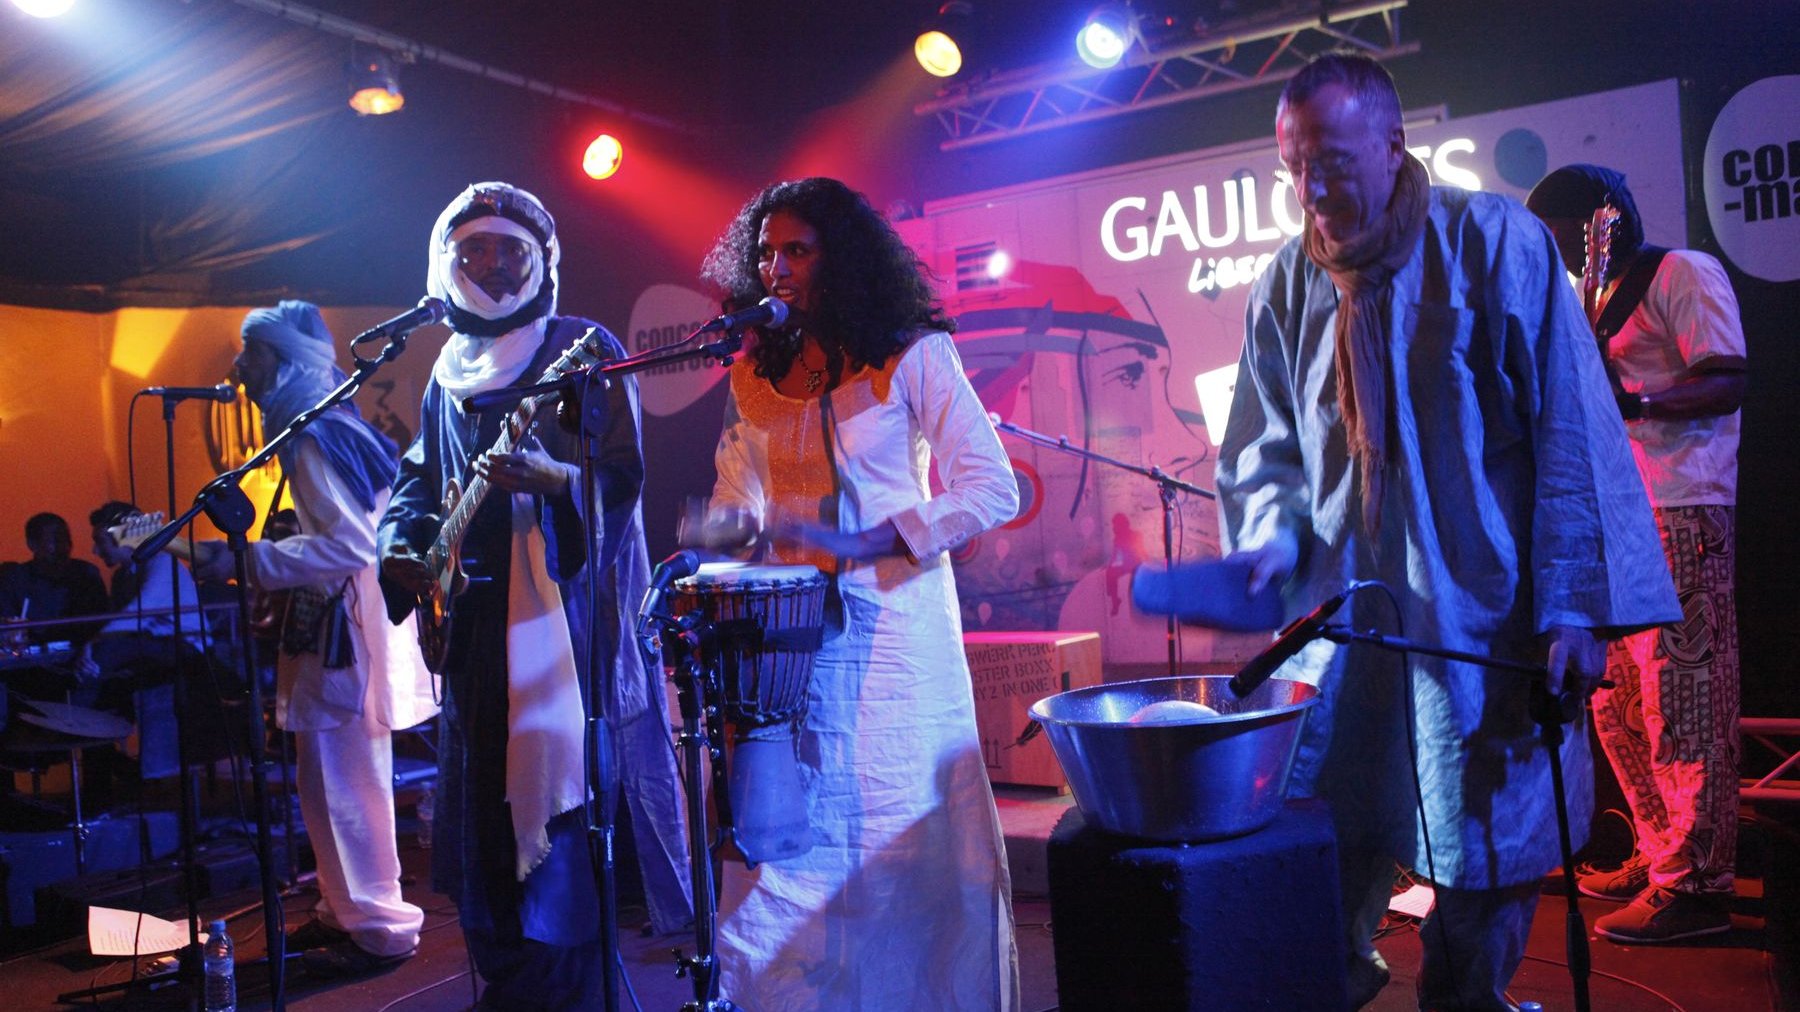 Toulout, la musicienne et chanteuse de charme du groupe, a fait tinter les morceaux de percussions aussi cristallines que sa voix. 
